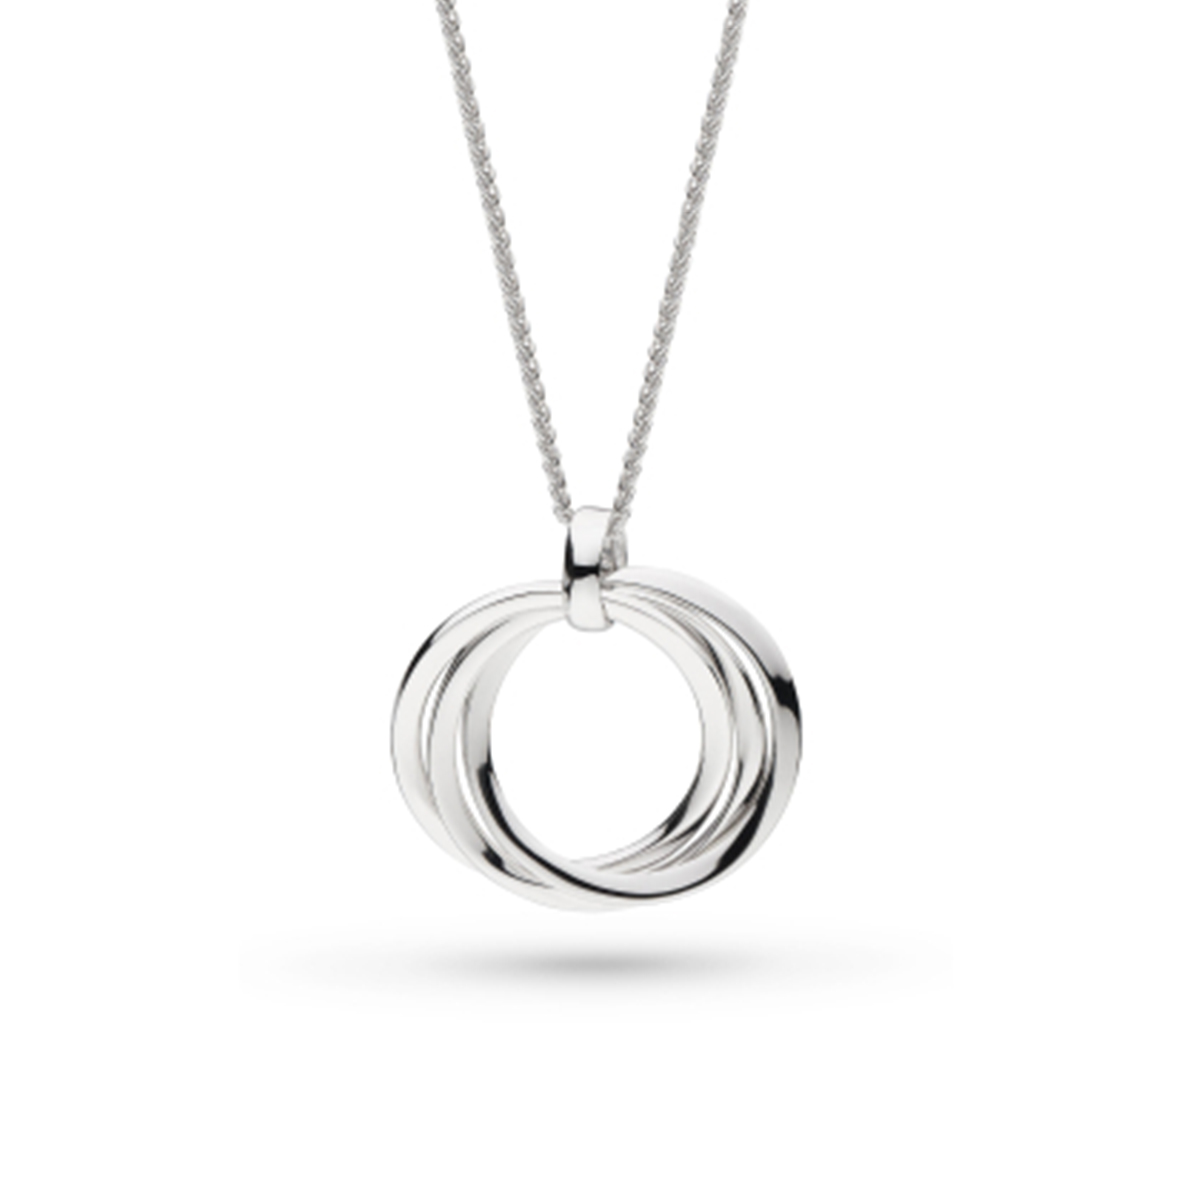 Diamond Clover Necklace – S. E. Joseph Jewelers